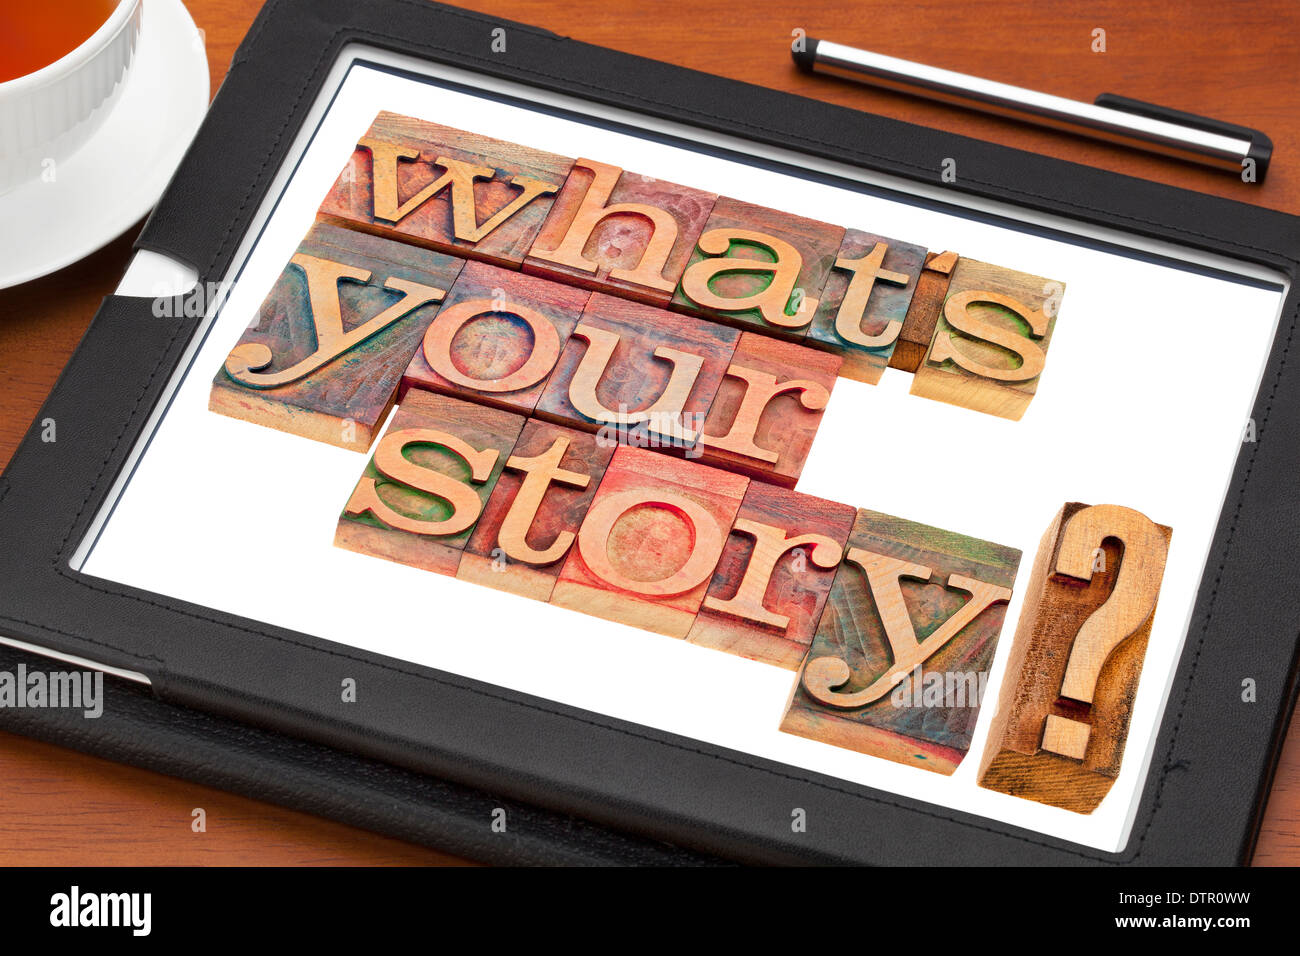 Was ist Ihre Geschichte Frage in Vintage Holz Buchdruck Druckstöcken auf einem digitalen Tablet mit einer Tasse Tee Stockfoto